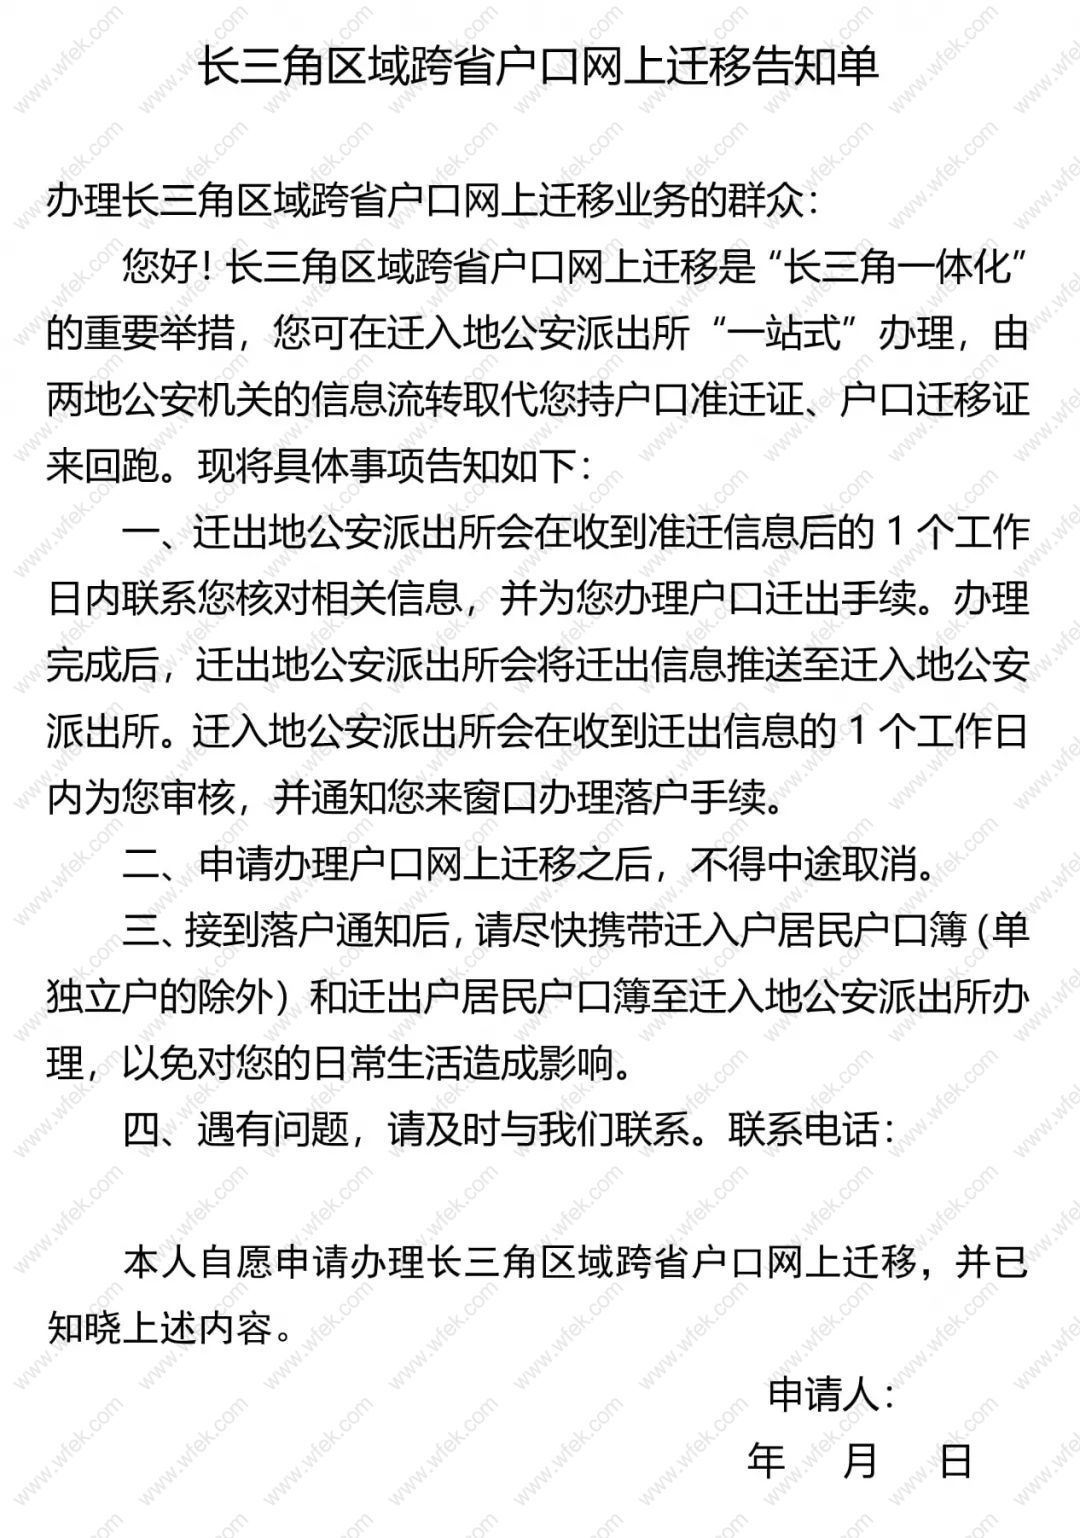 上海长三角地区迁户申请告知单